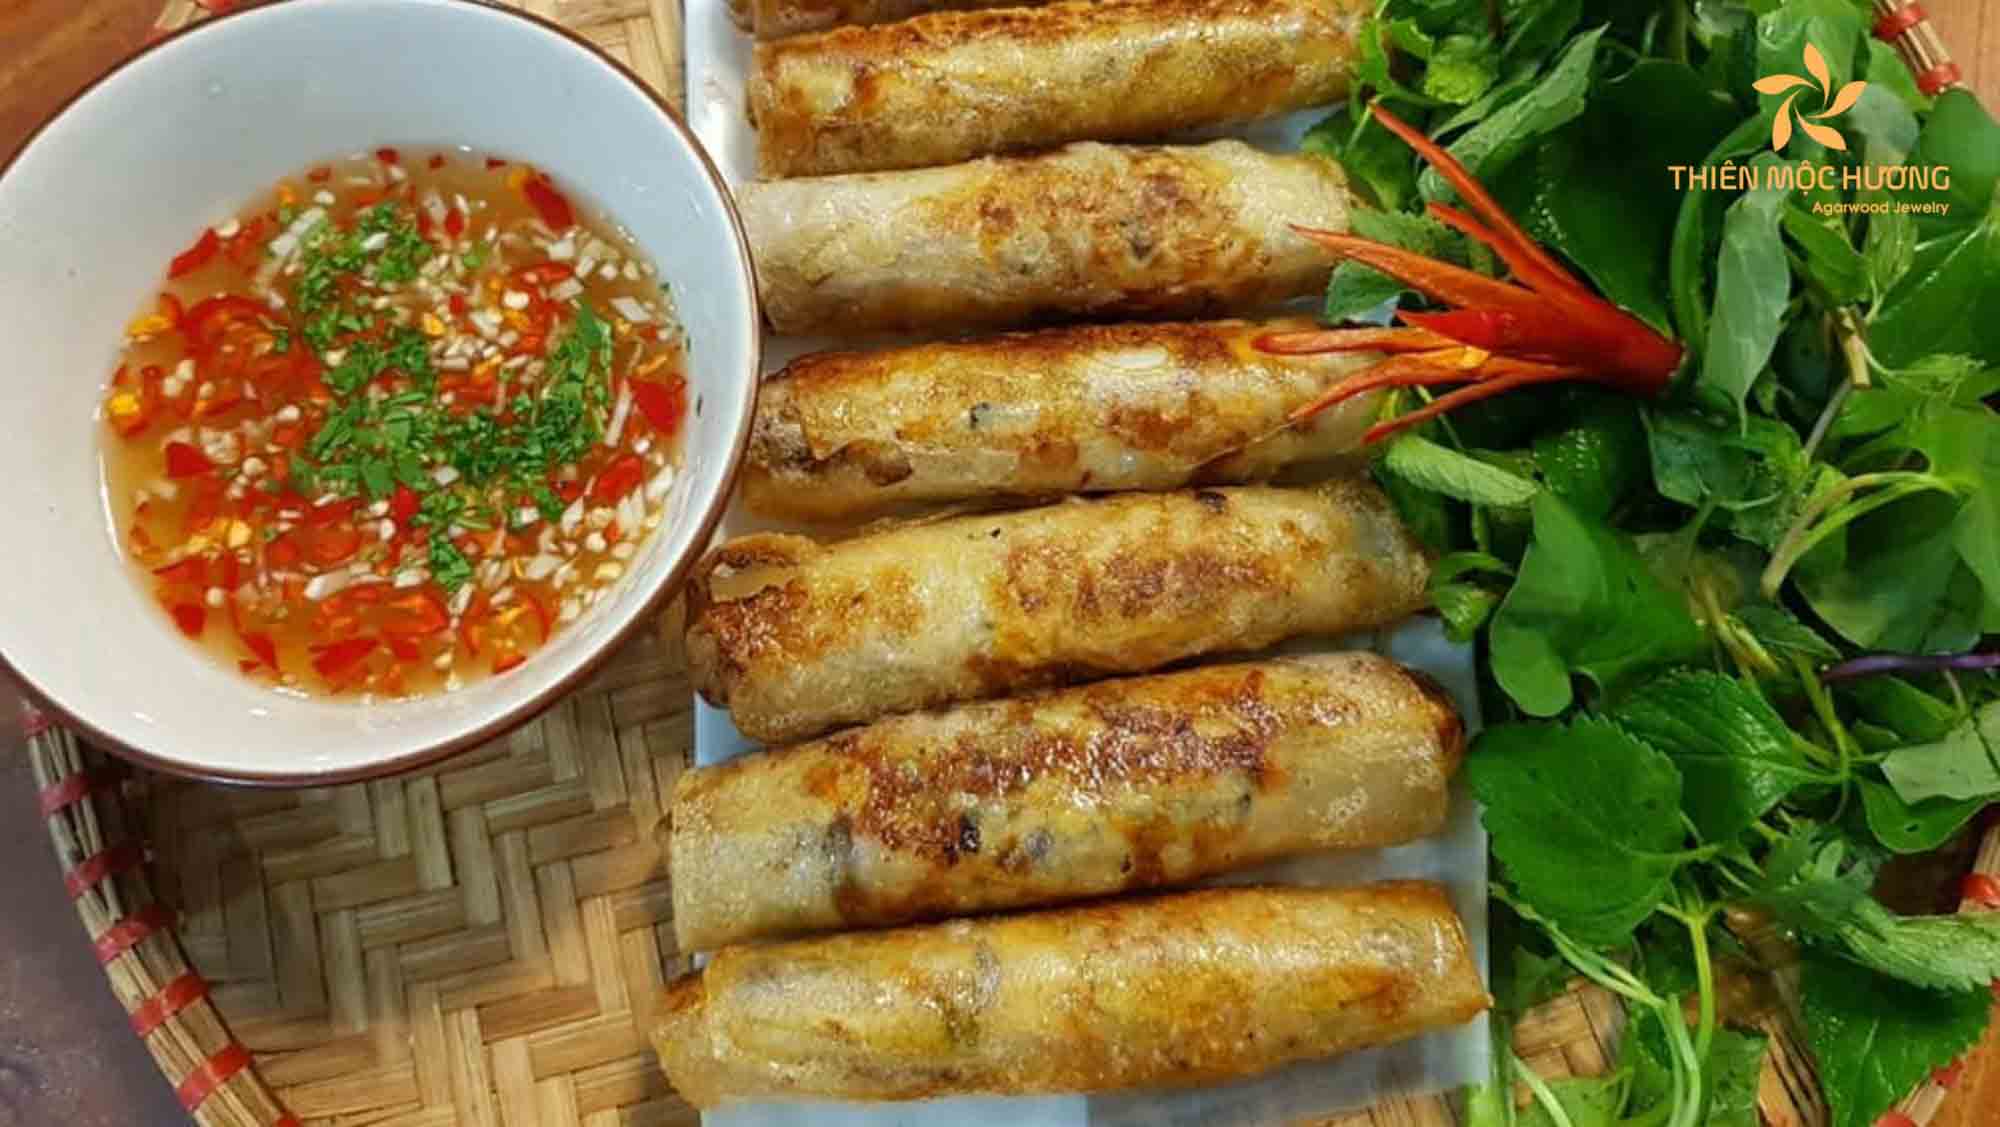 Vietnamese egg rolls